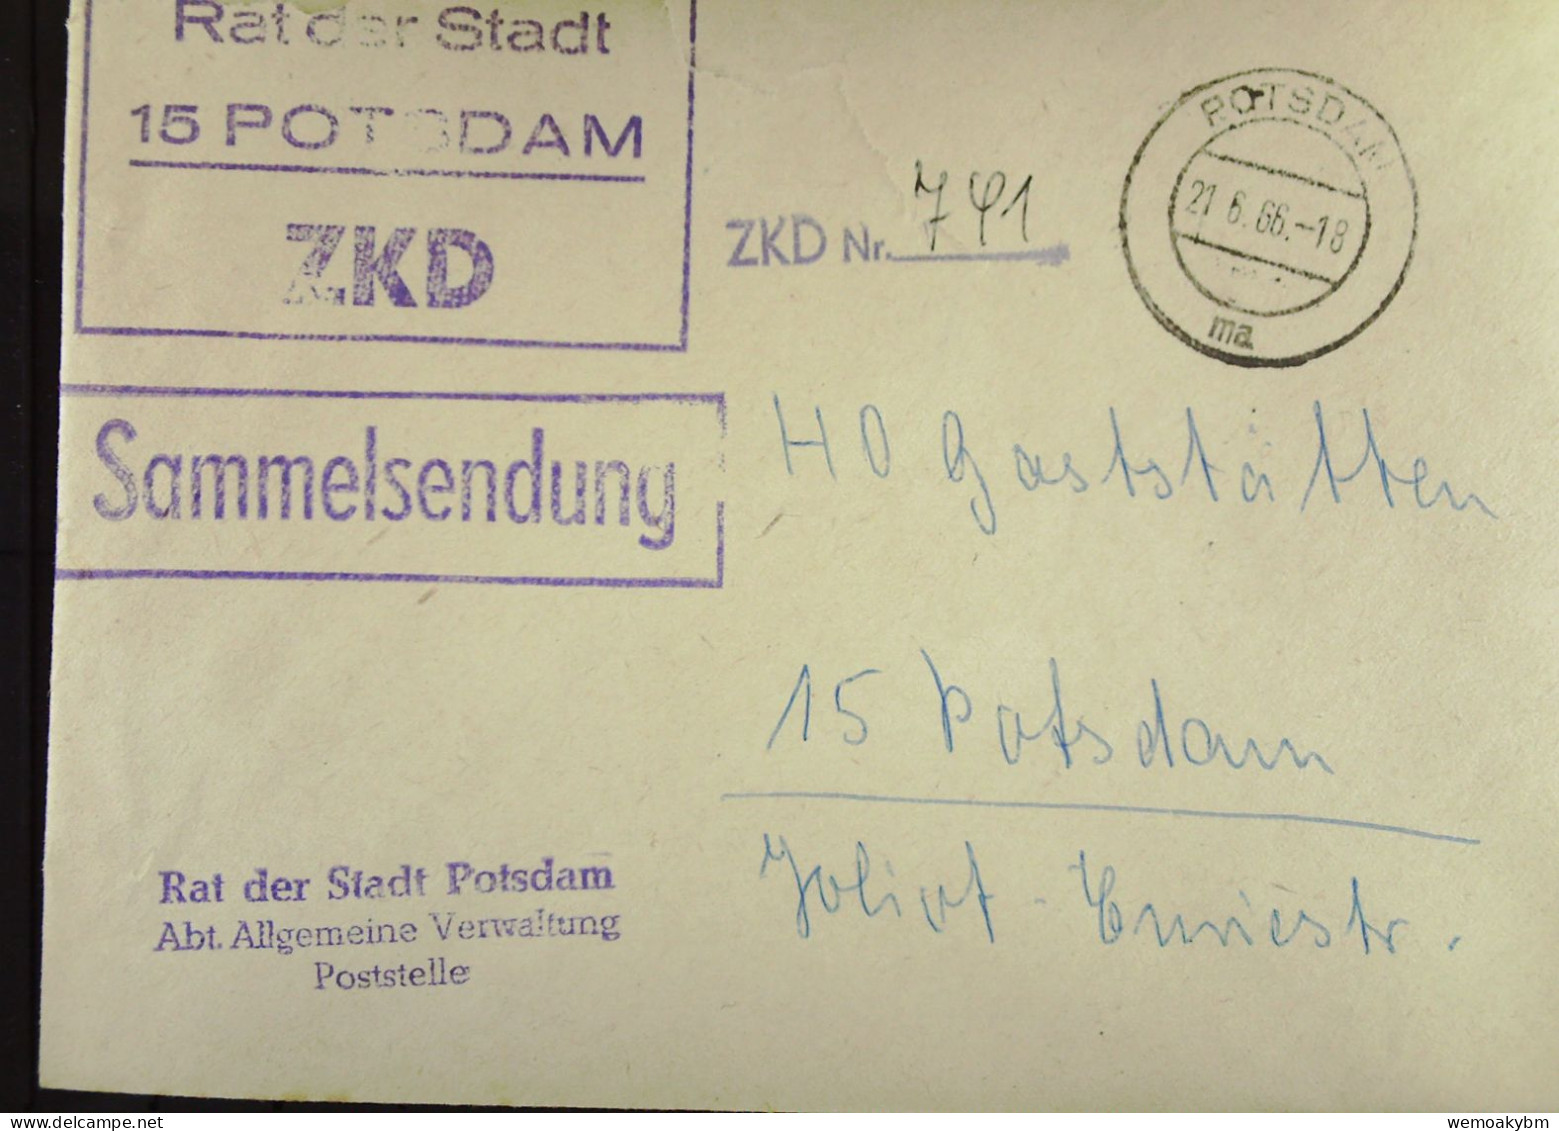 Orts-Brief Mit ZKD-Kastenst "Rat Der Stadt 15 POTSDAM" Vom 21.6.66 An HO Gaststätten Potsdam "Sammelsendung"-ZKD-Nr. 741 - Covers & Documents